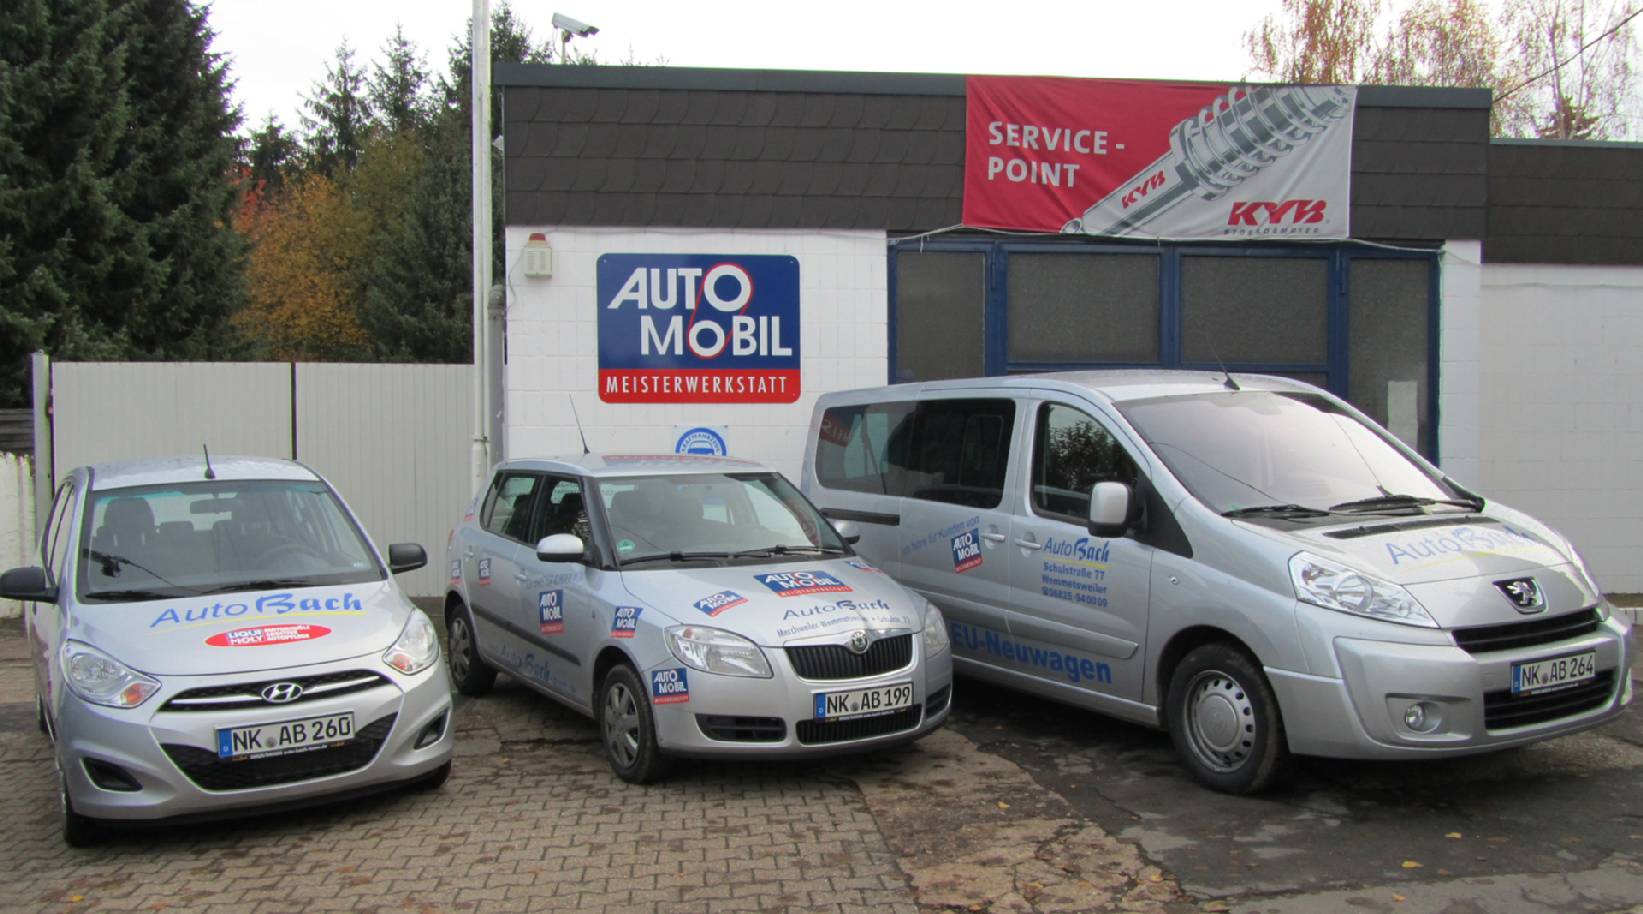 Willkommen bei Auto Bach in Merchweiler. Wir bieten Ihnen tolle Gebrauchtfahrzeuge, Reimporte und Jahreswagen.